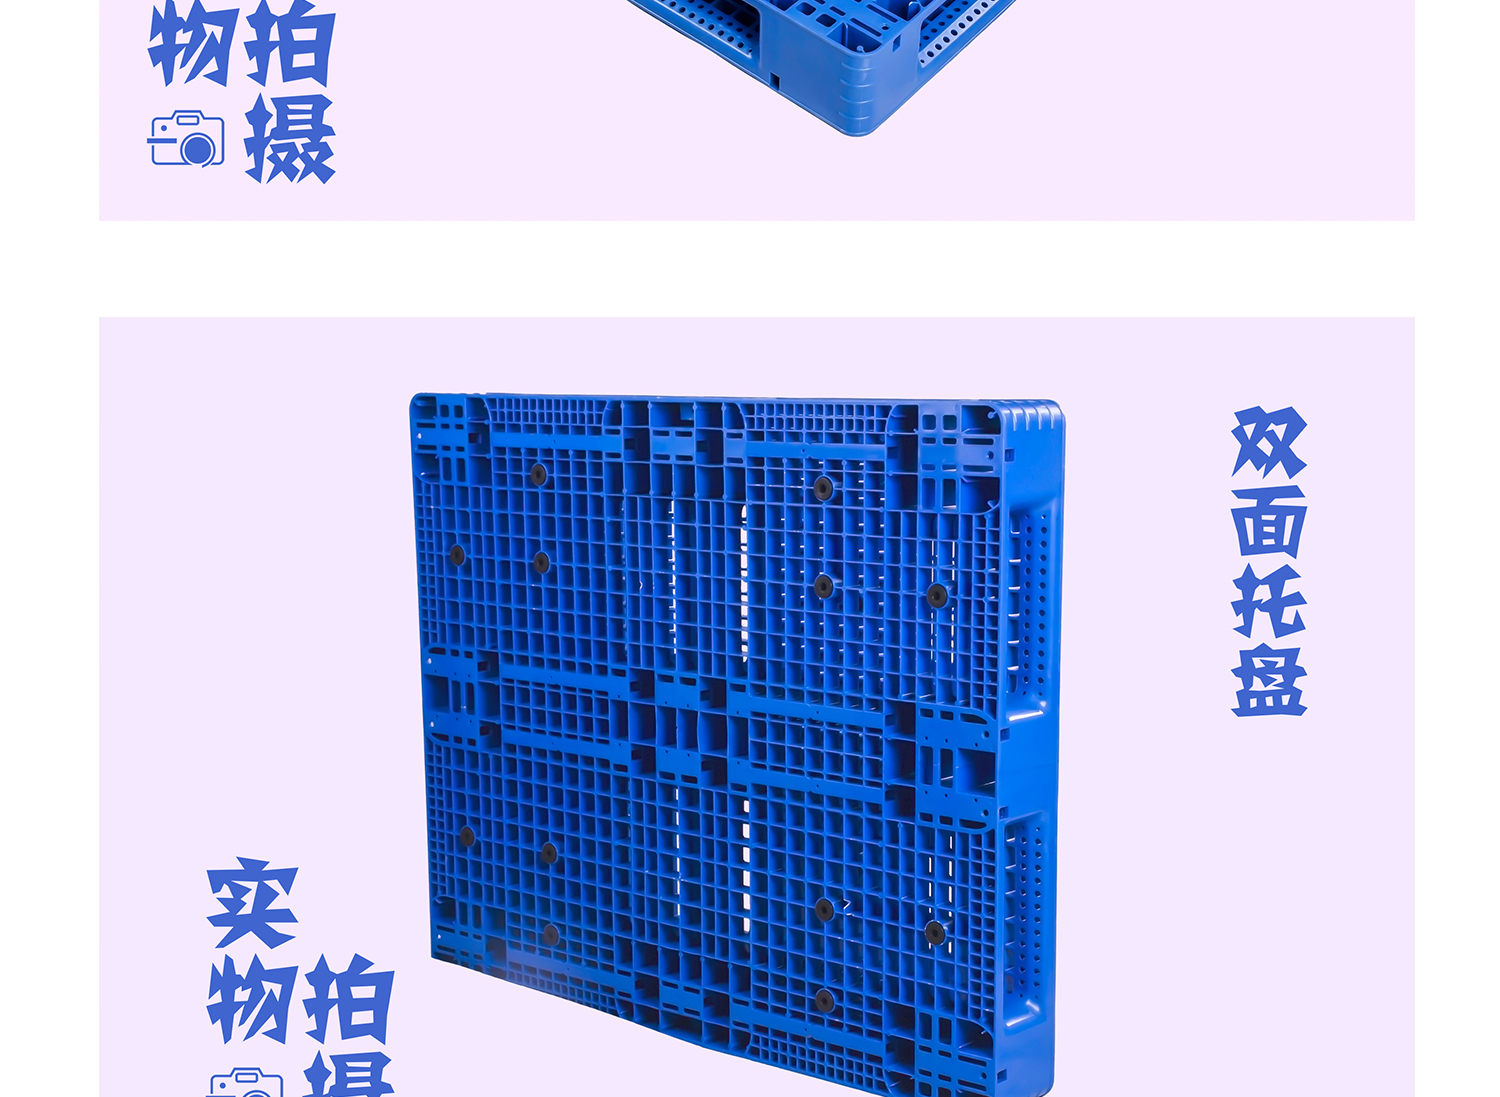 重庆仓储货架1210双面塑料托盘 双面网格塑料托盘厂家批发 重庆仓储货架1210双面塑料托盘图片